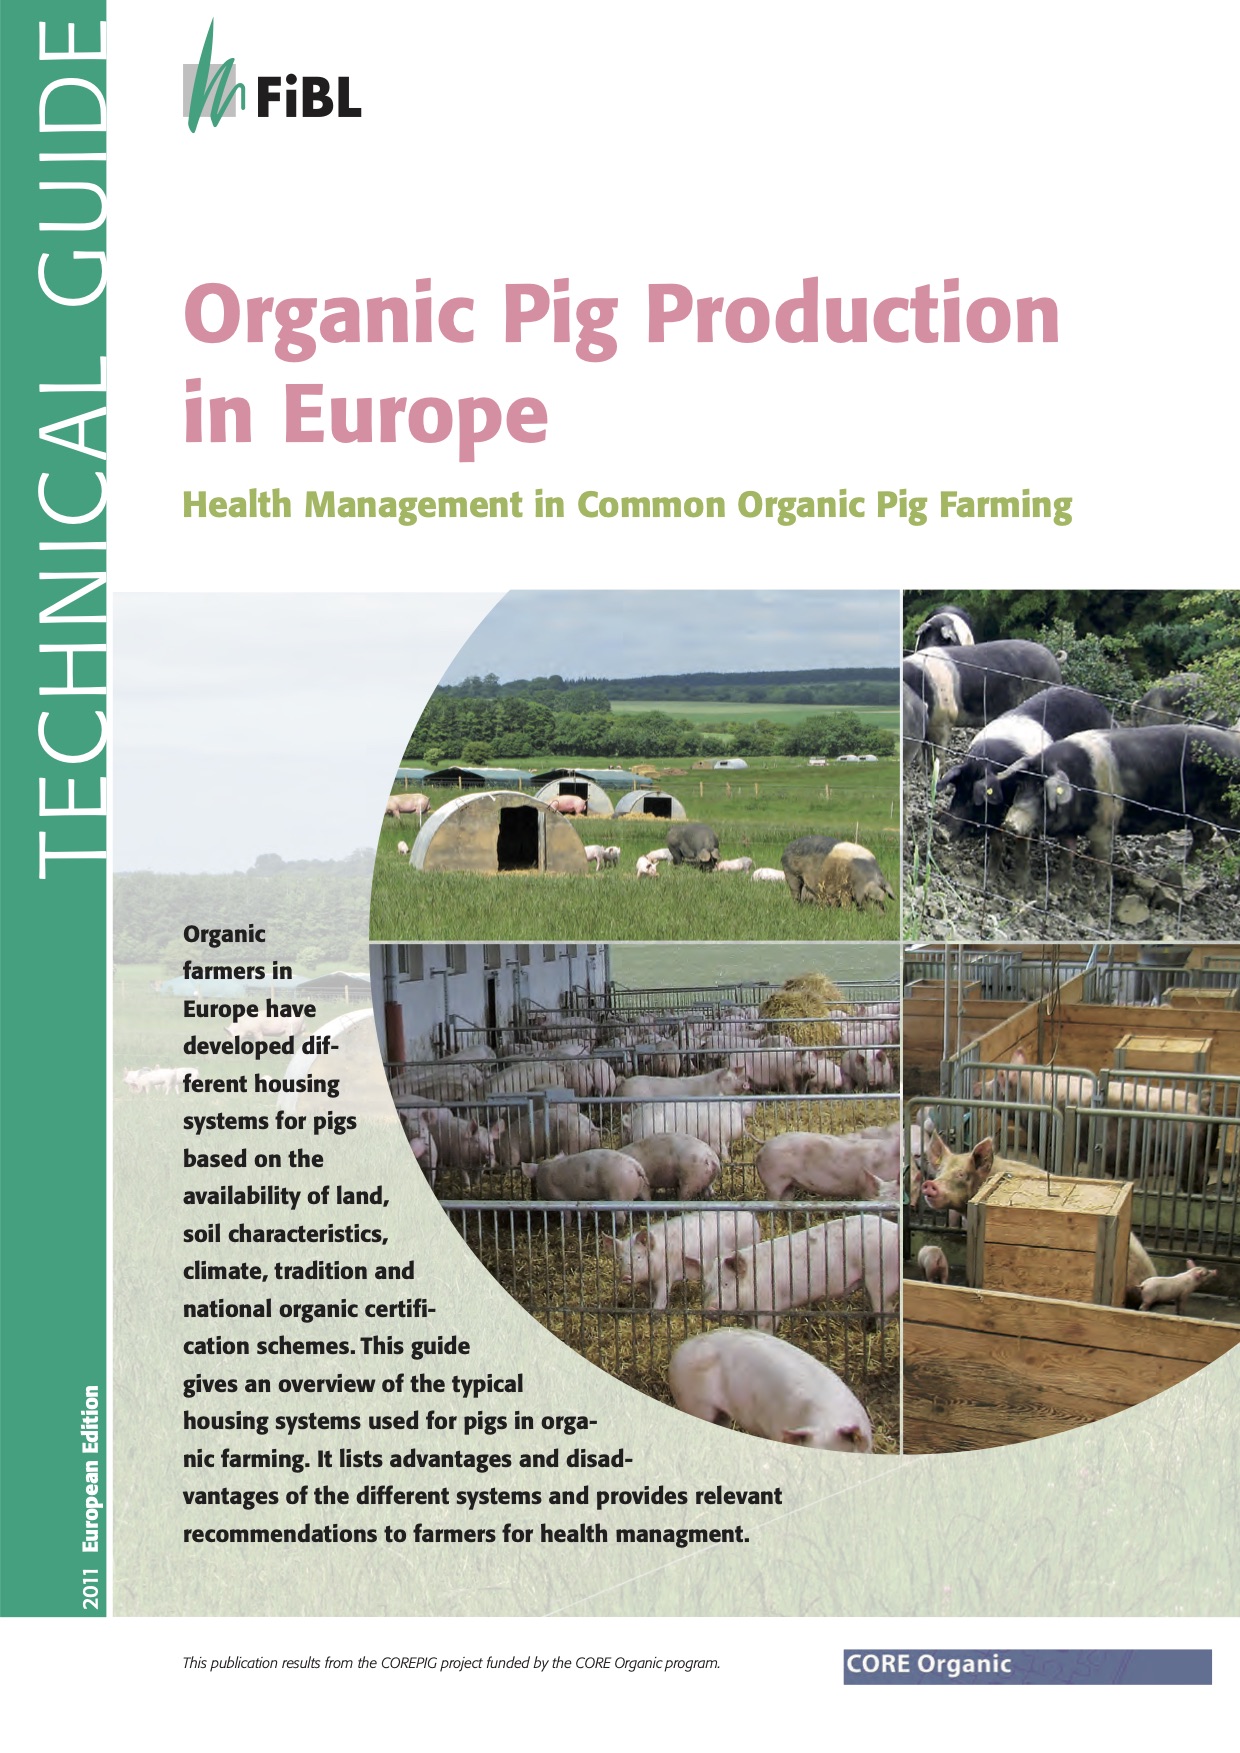 Ekologisk grisproduktion i Europa: hälsoledning i vanlig ekologisk grisuppfödning